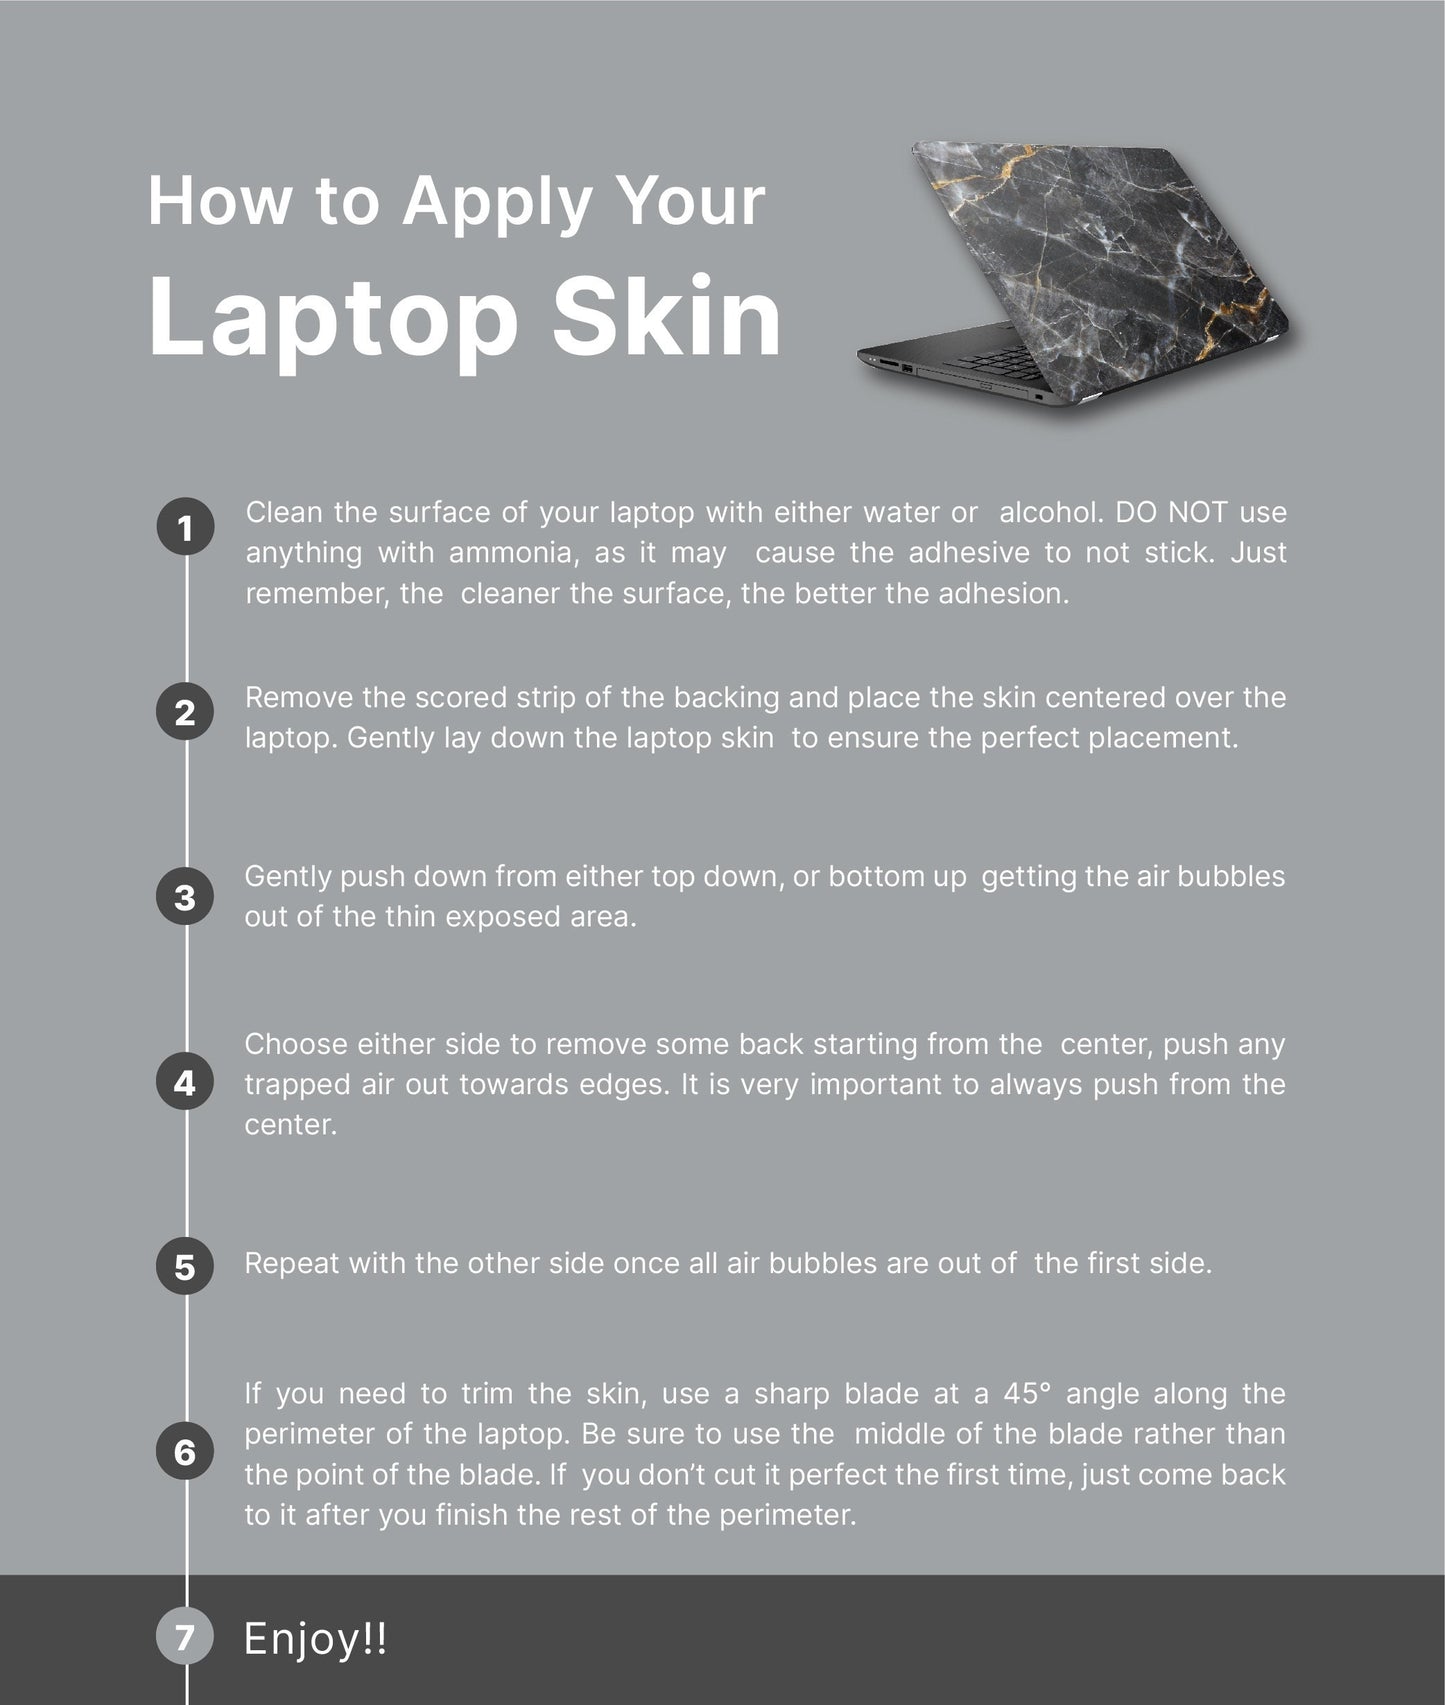 Tropic Floral Laptop Skin, Laptop Cover, Laptop Skins, Removable Laptop Skins, Laptop Decal, Customized Laptop Skin, Laptop Stickers 99 - James & Inks